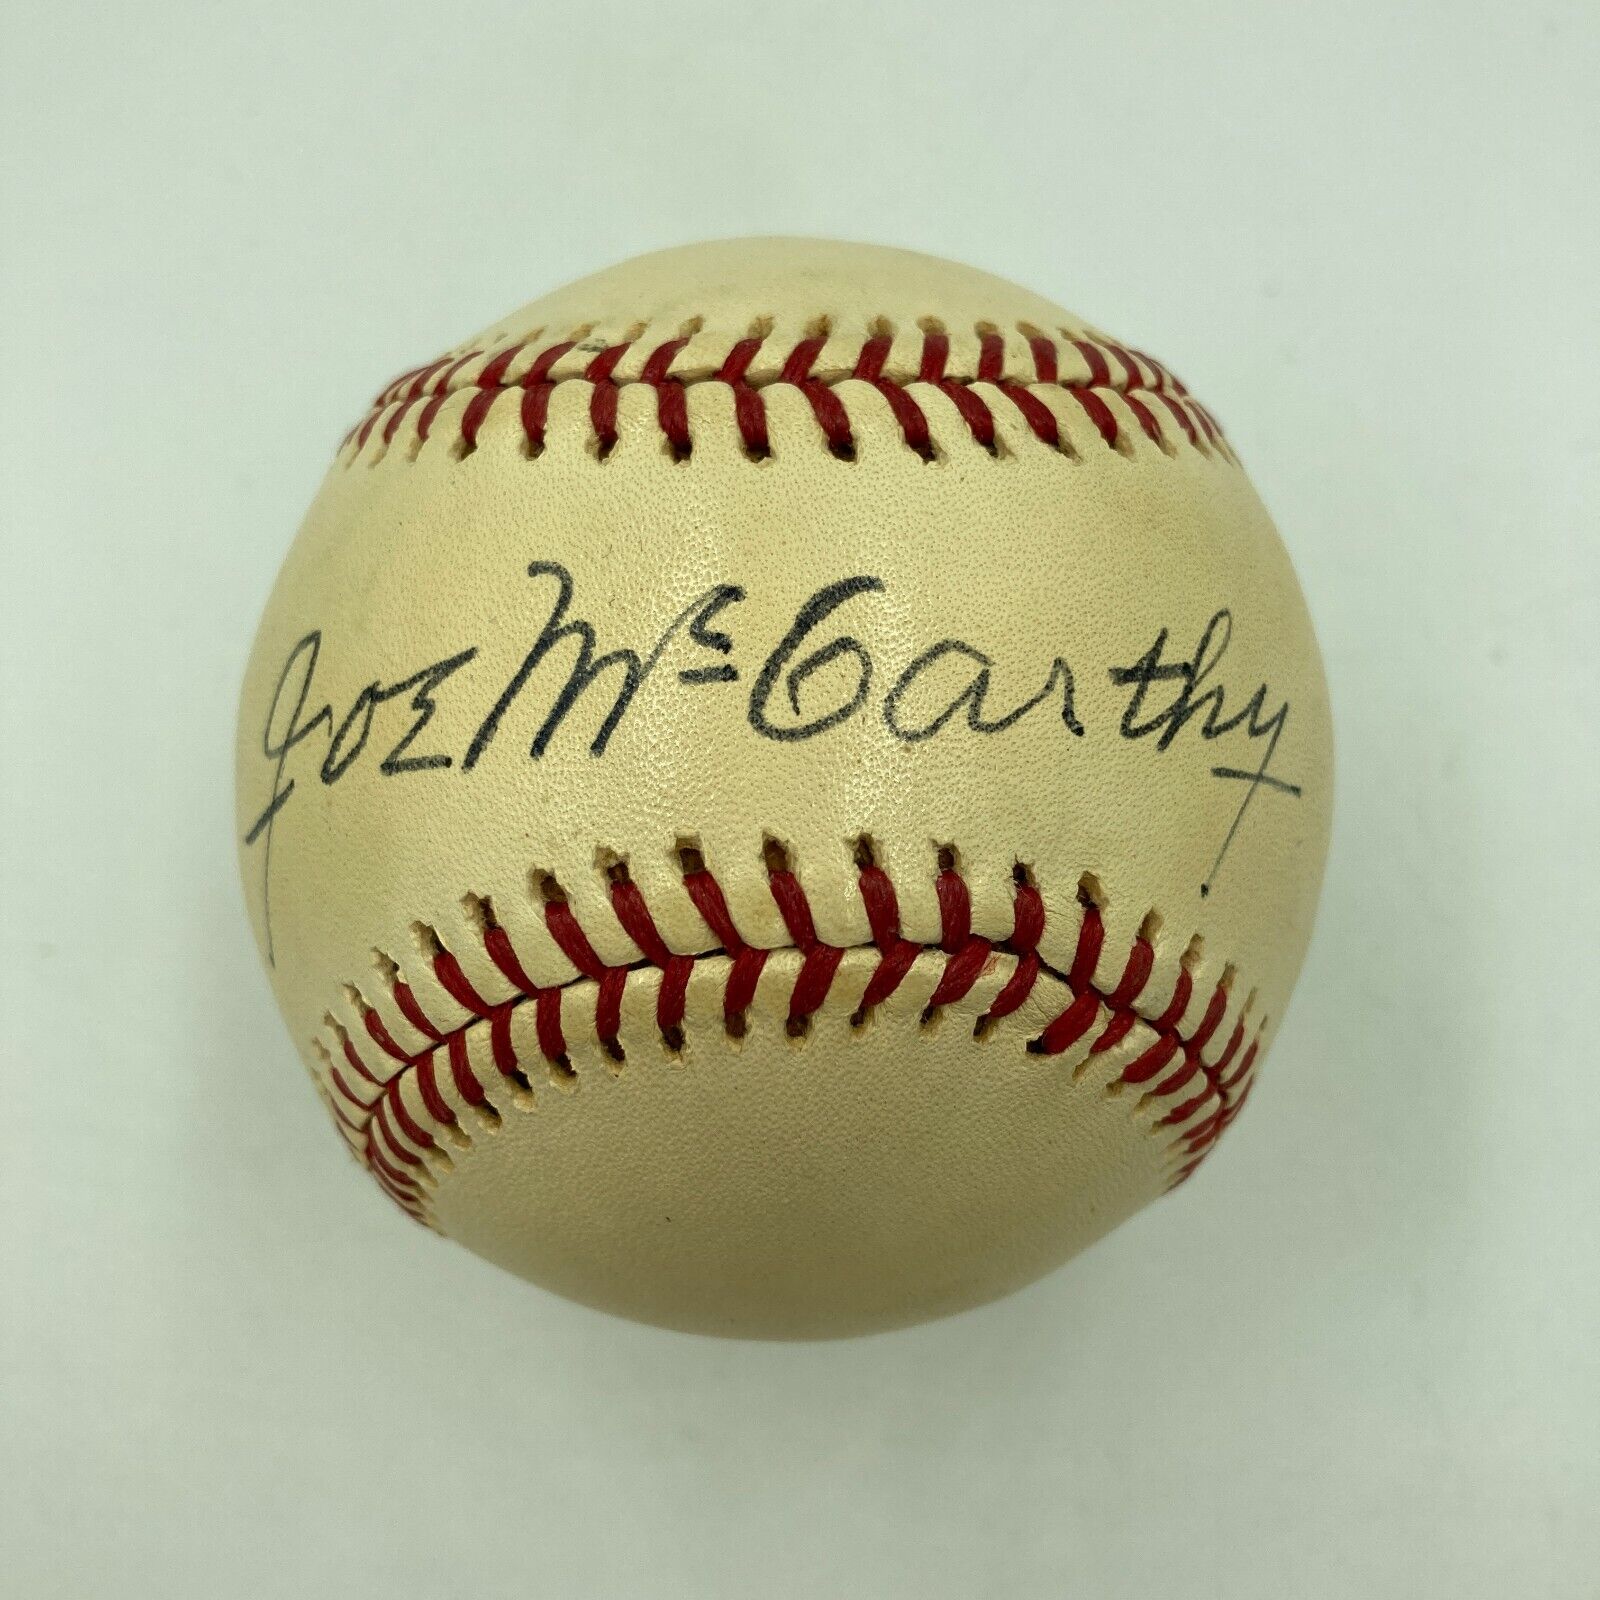 Stunning Joe Mccarthy Single Signed American League Baseball With JSA COA 